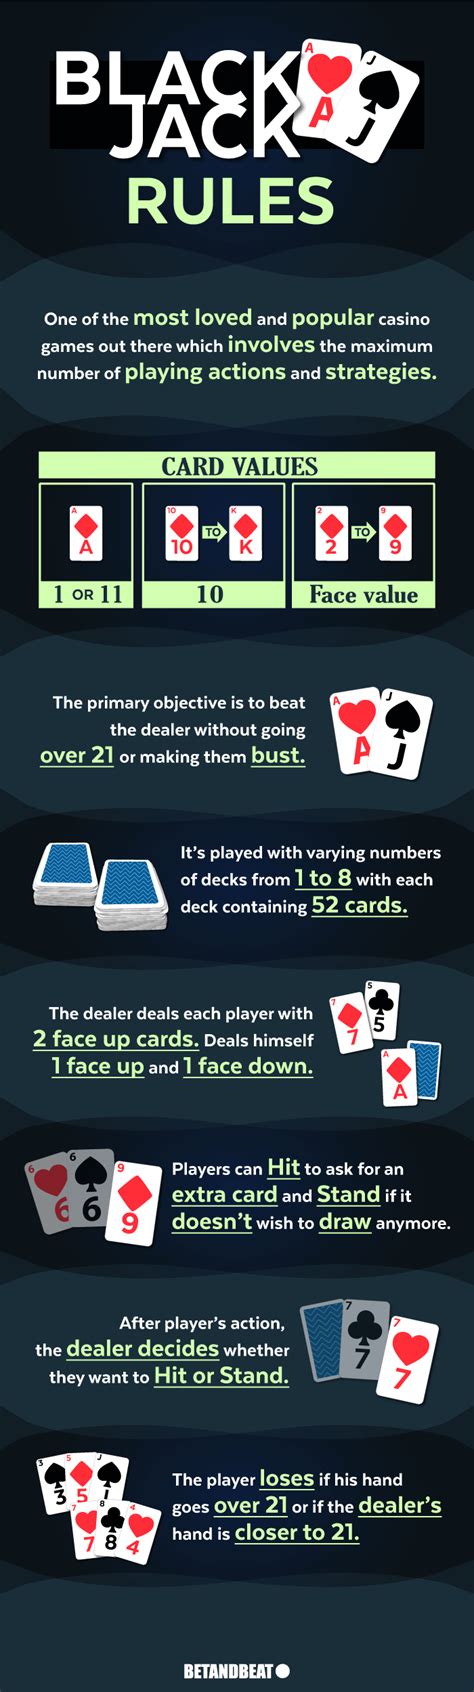 blackjack deck rules ihsx